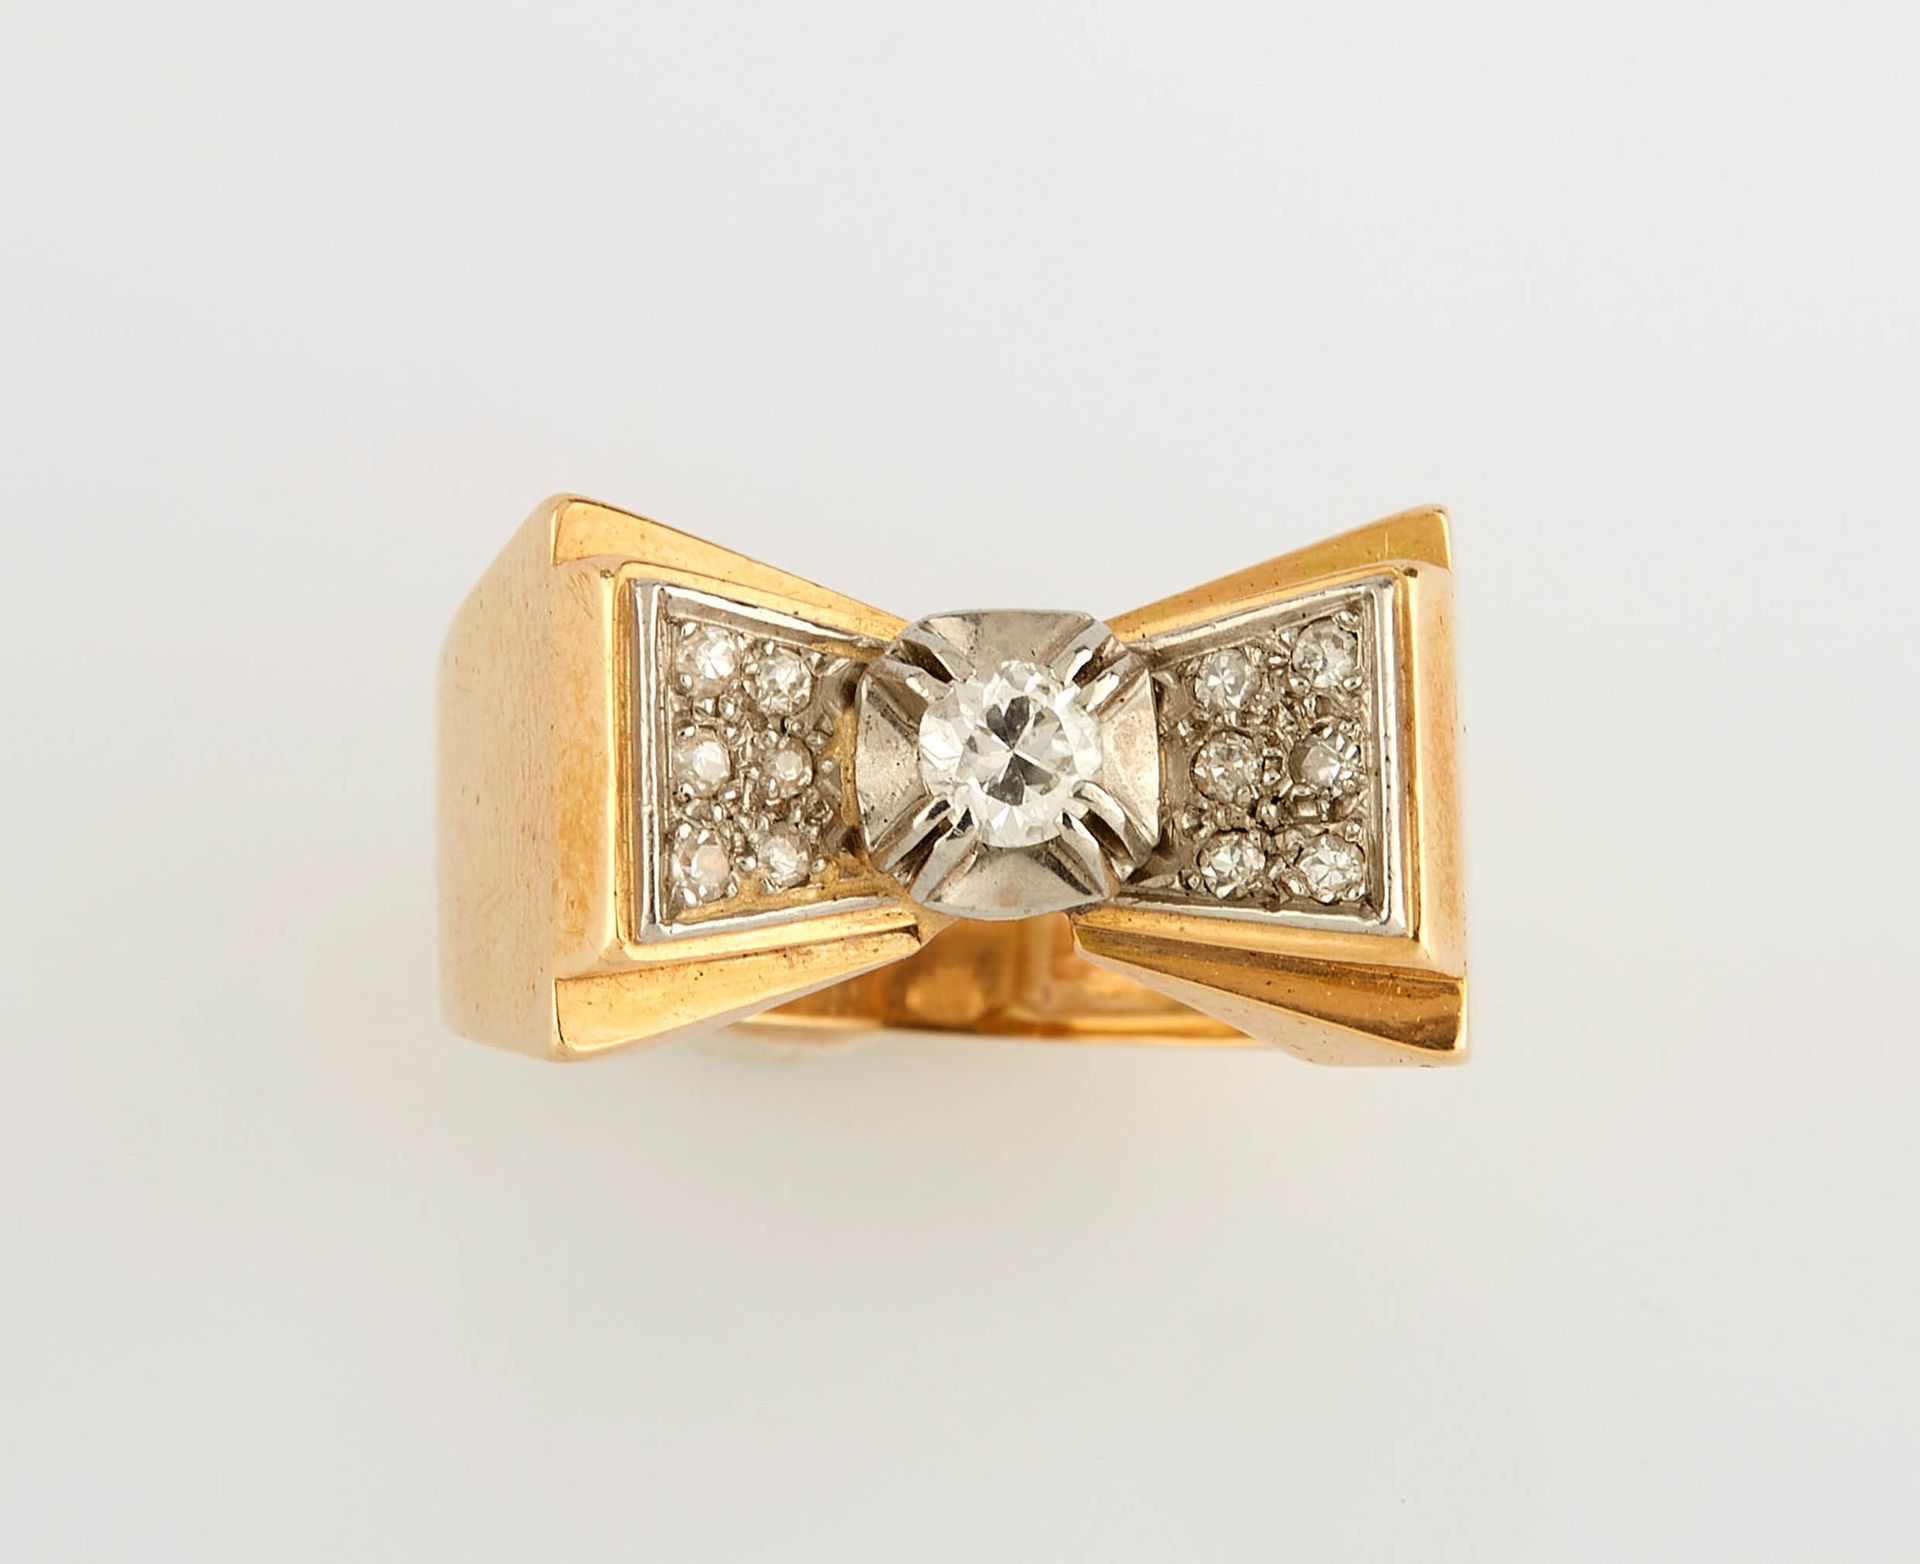 Null 黄金和白金戒指，中间镶嵌了一颗约0.20克拉的小圆钻，并有两颗钻石铺垫。手指大小：58。重量：9.96克。